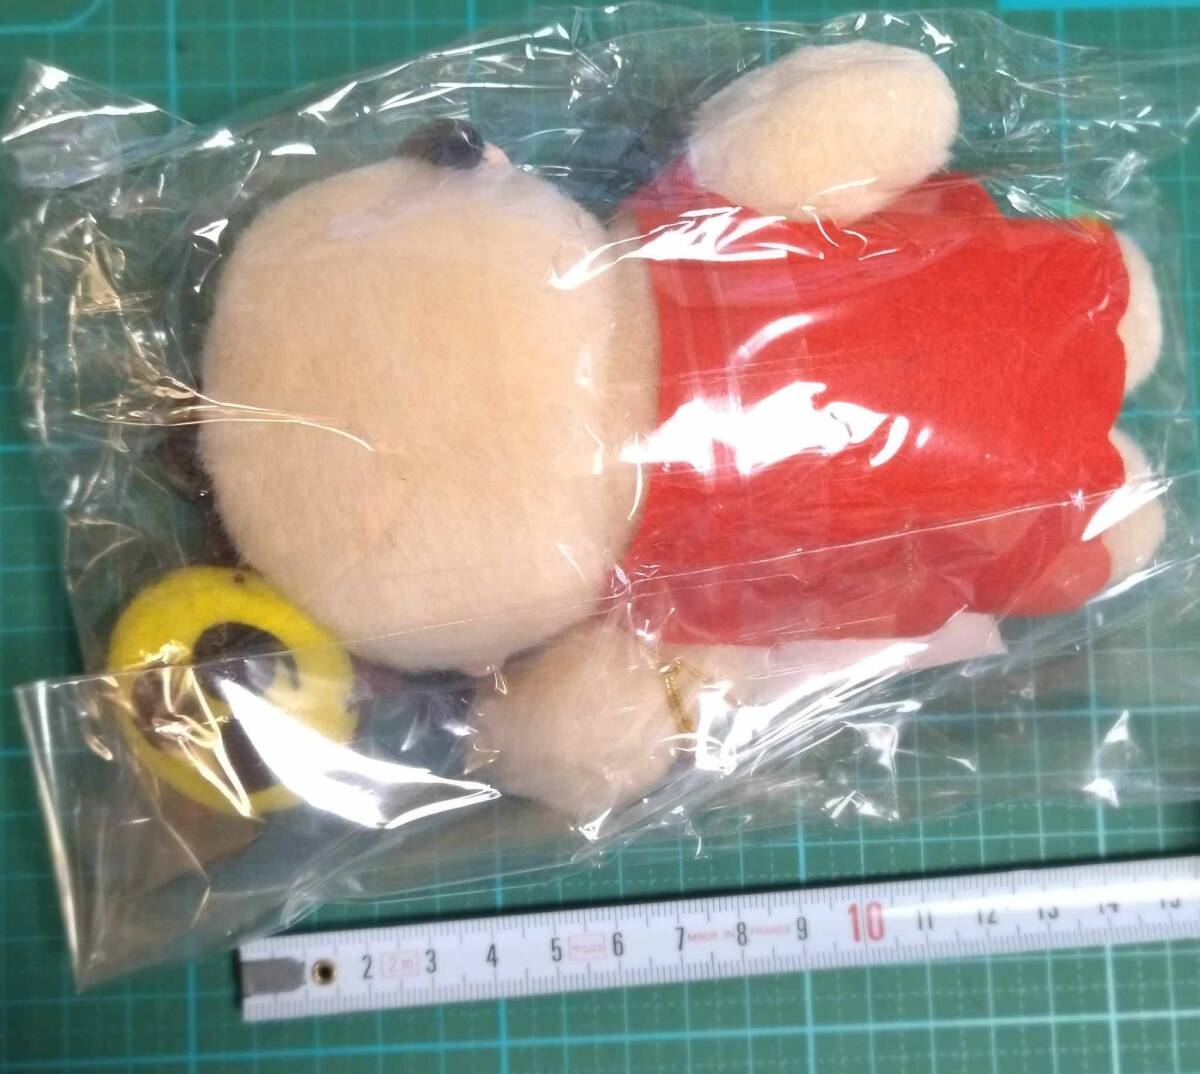 非売品 まんが 日本昔ばなし ビデオ 発売記念 ぬいぐるみ マスコット 昔ばなし太郎 ONCE UPON A TIME IN JAPAN mascot stuffed toy Doll